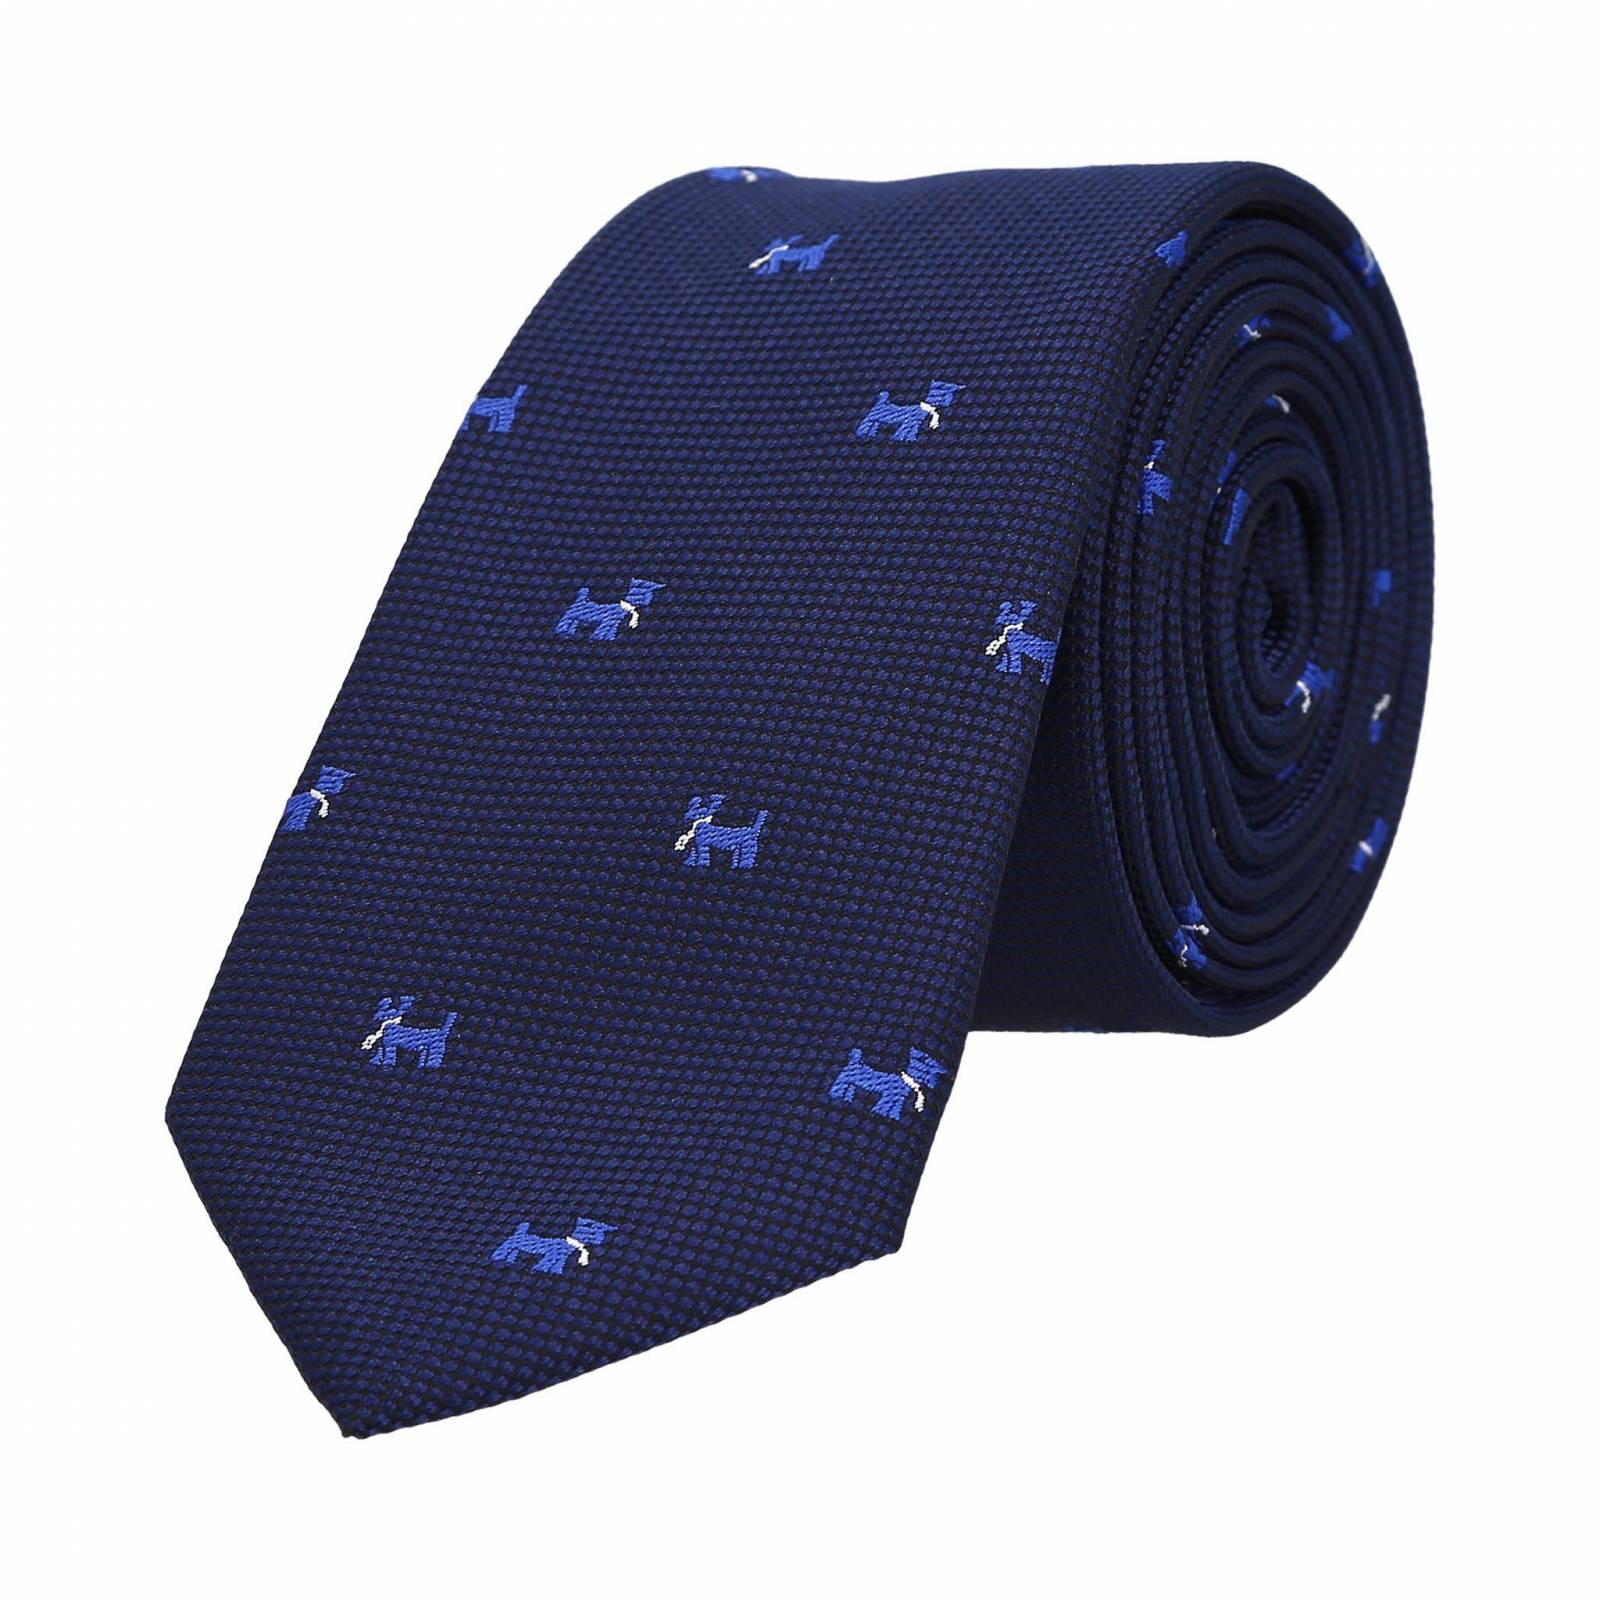 Corbata azul marino con bordado de perrito poliéster